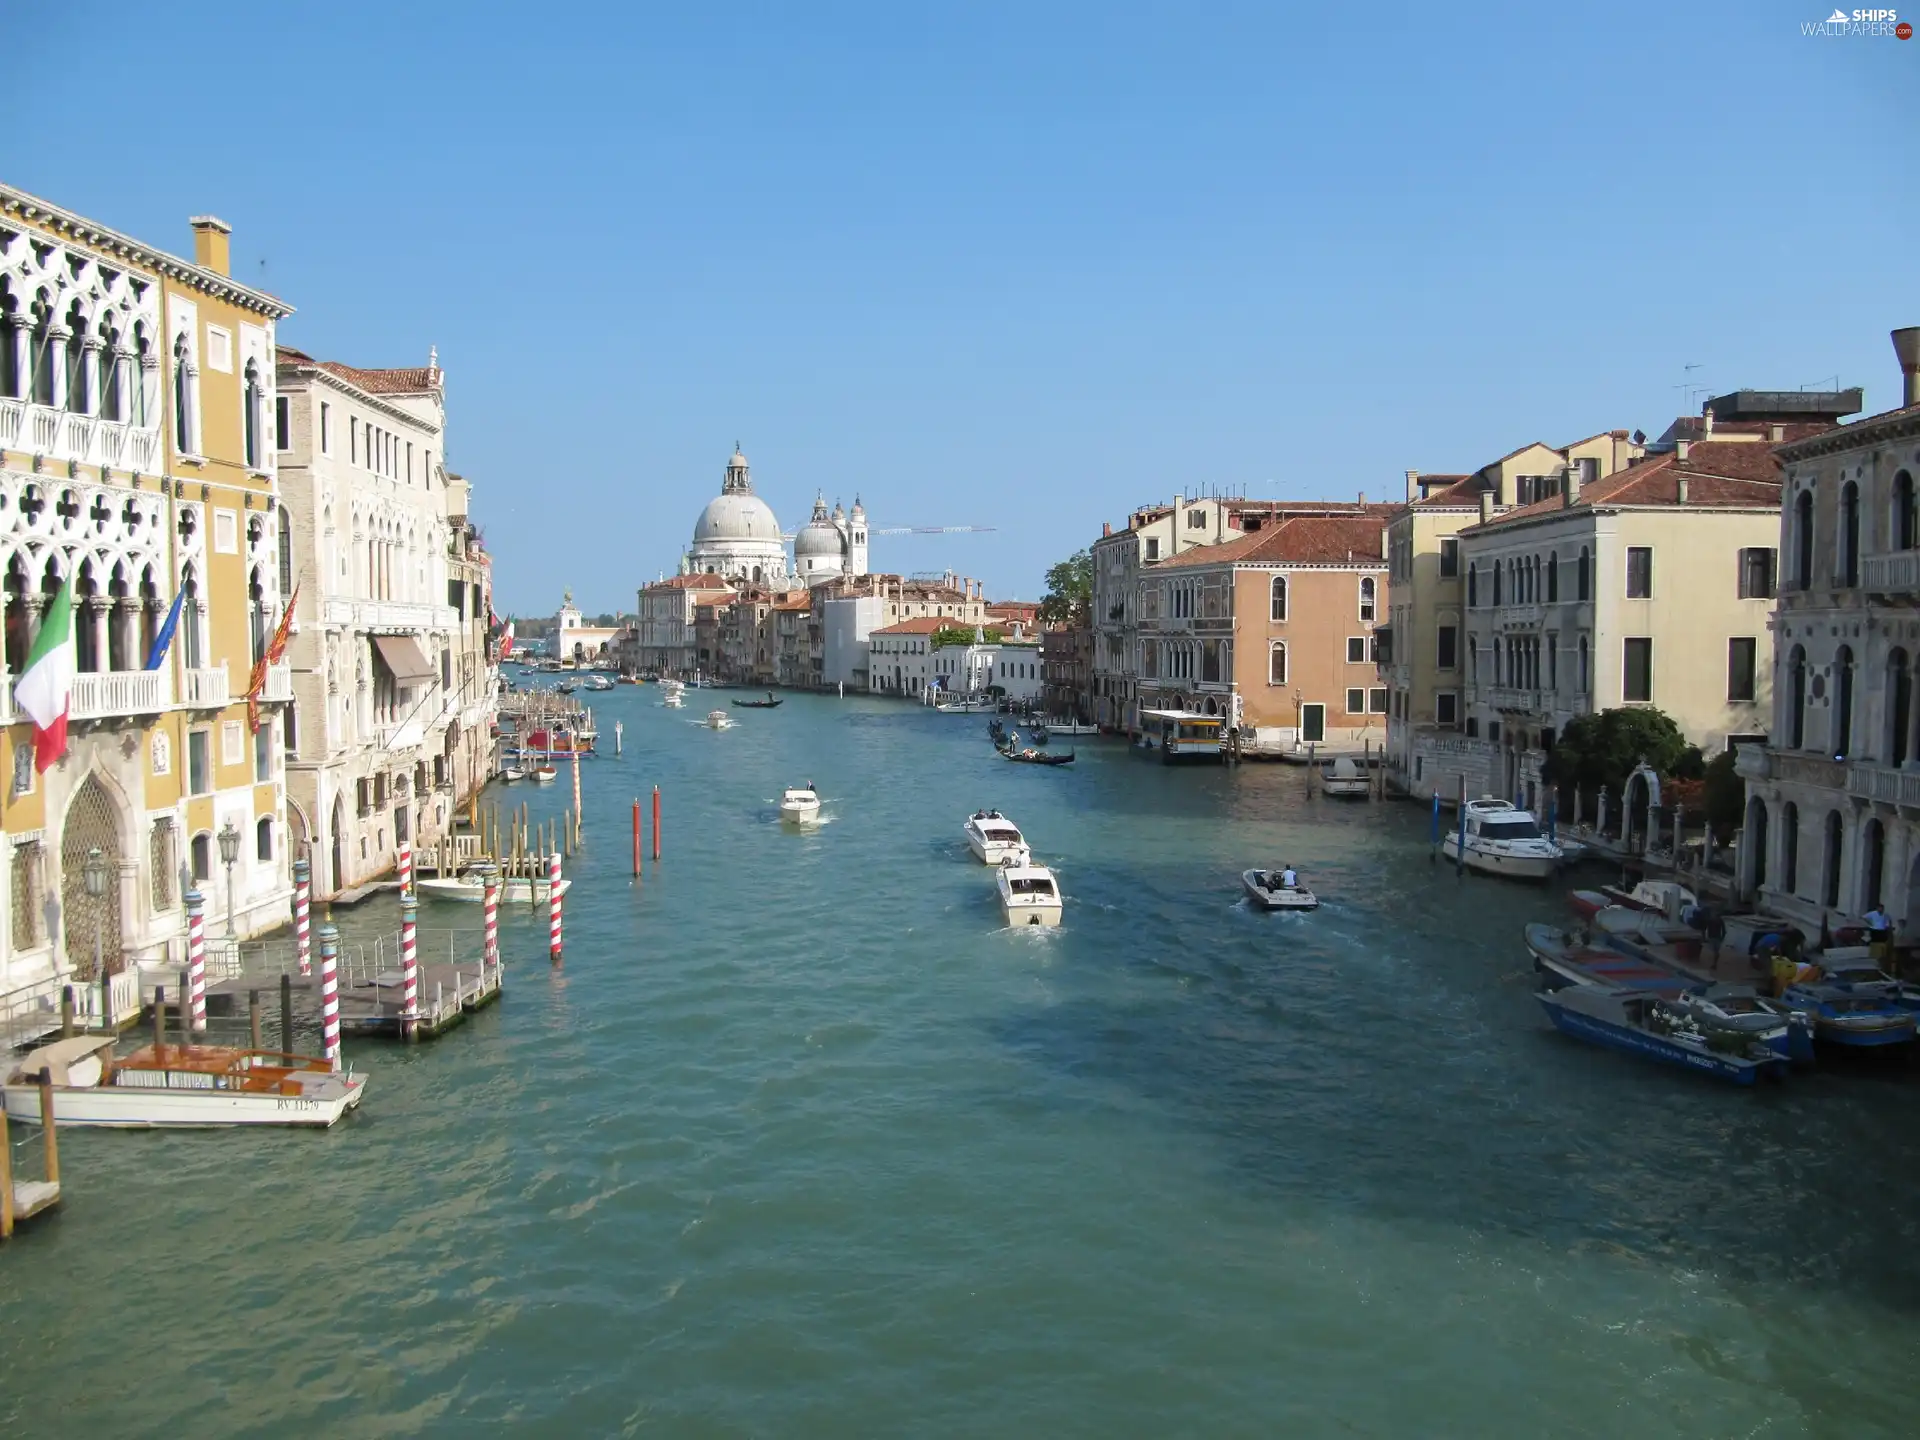 Beauty, canal, boats, Venice